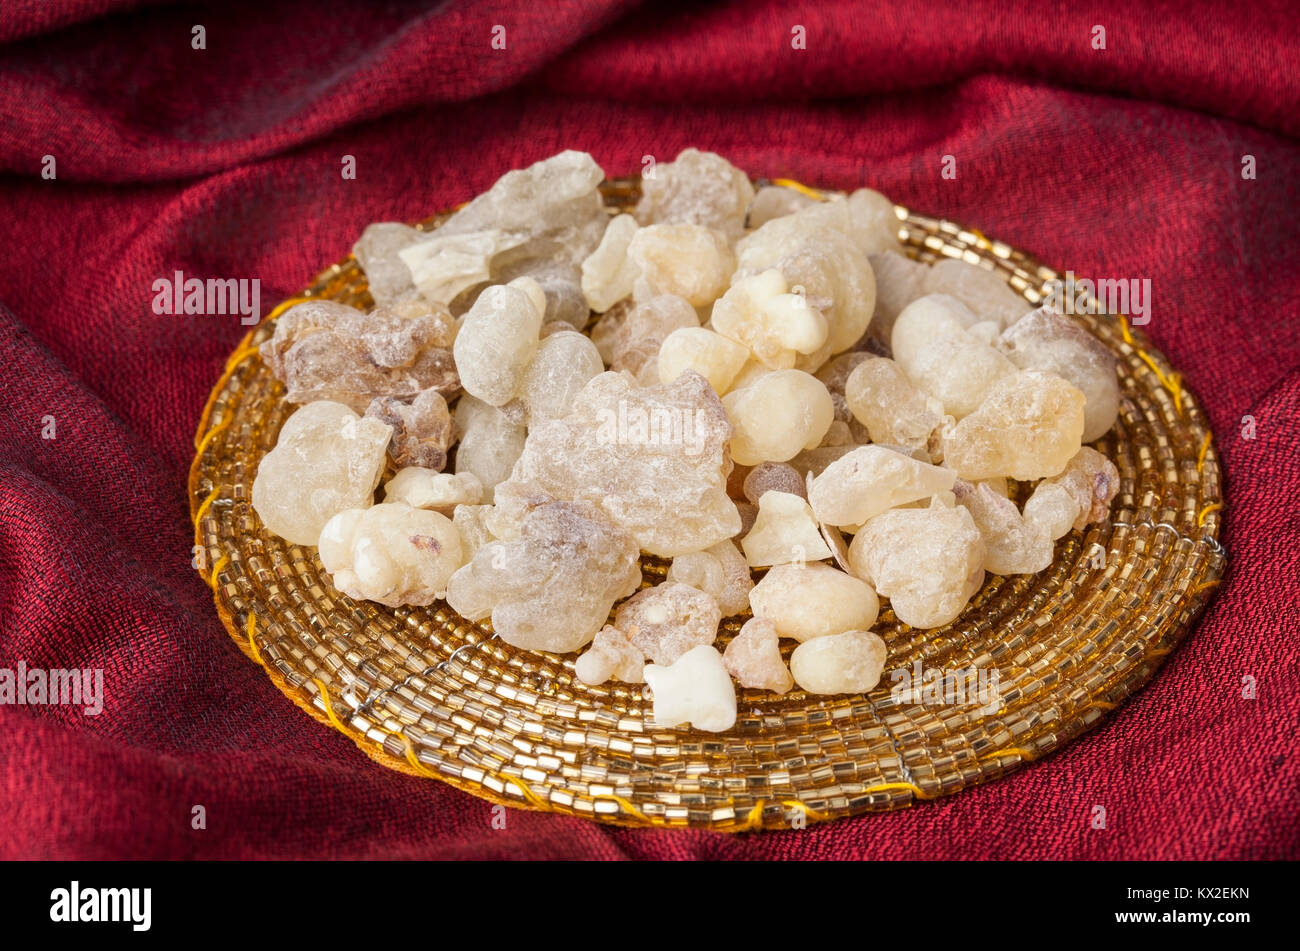 Incenso è una resina aromatica, usato per i riti religiosi, incenso e profumi. Alta qualità di resina di incenso da Dhofar, Oman. Foto Stock